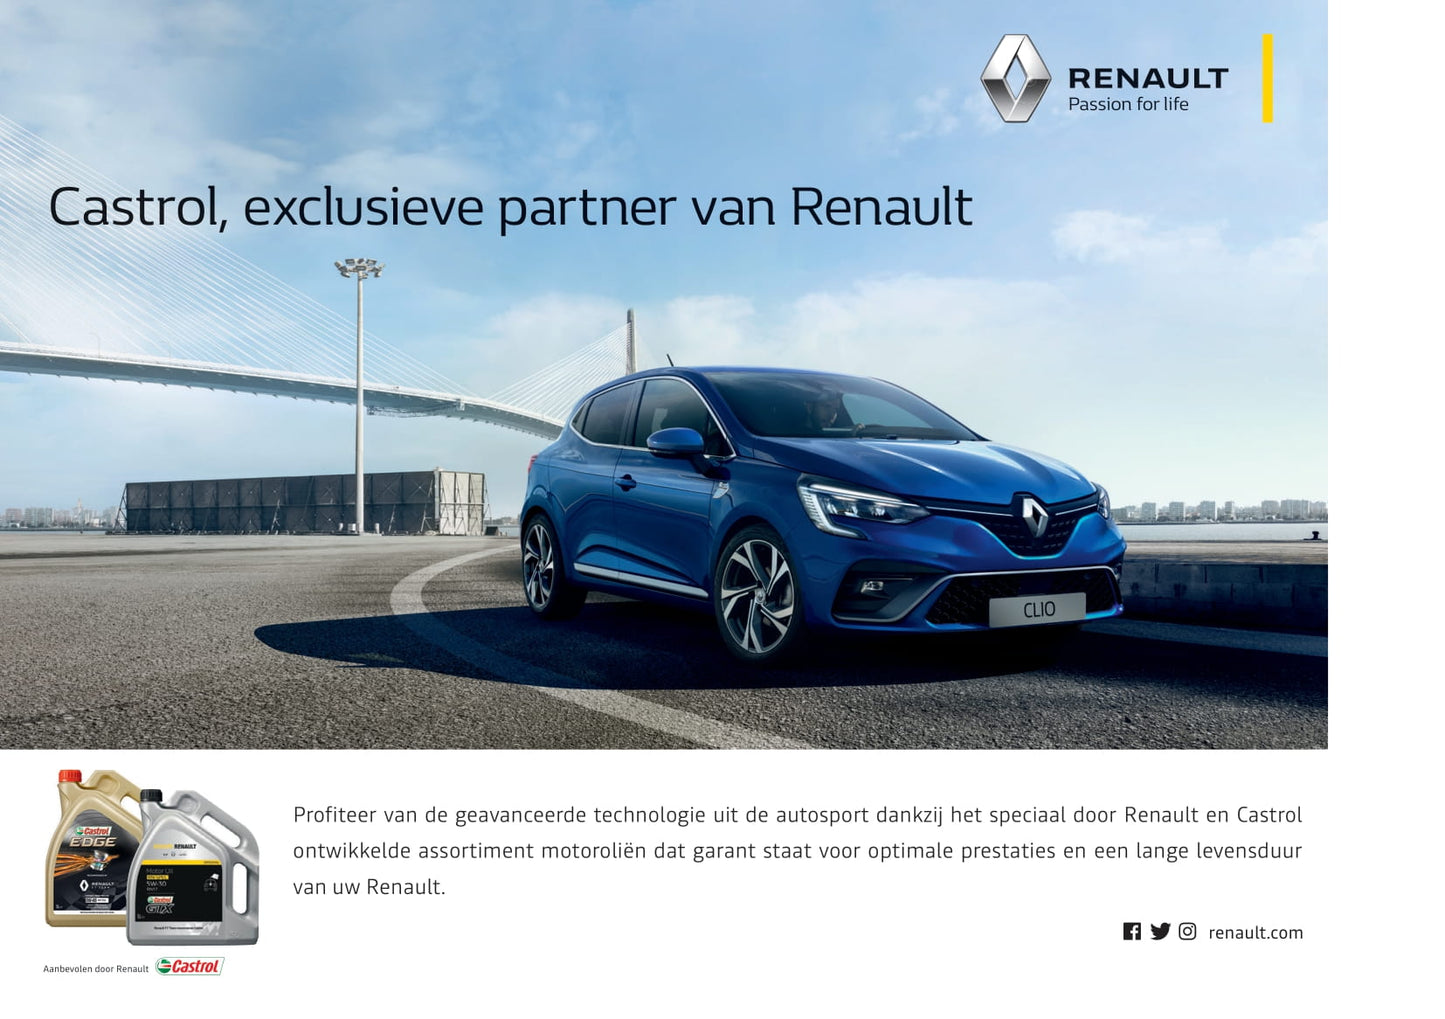 2021 Renault Express Gebruikershandleiding | Nederlands